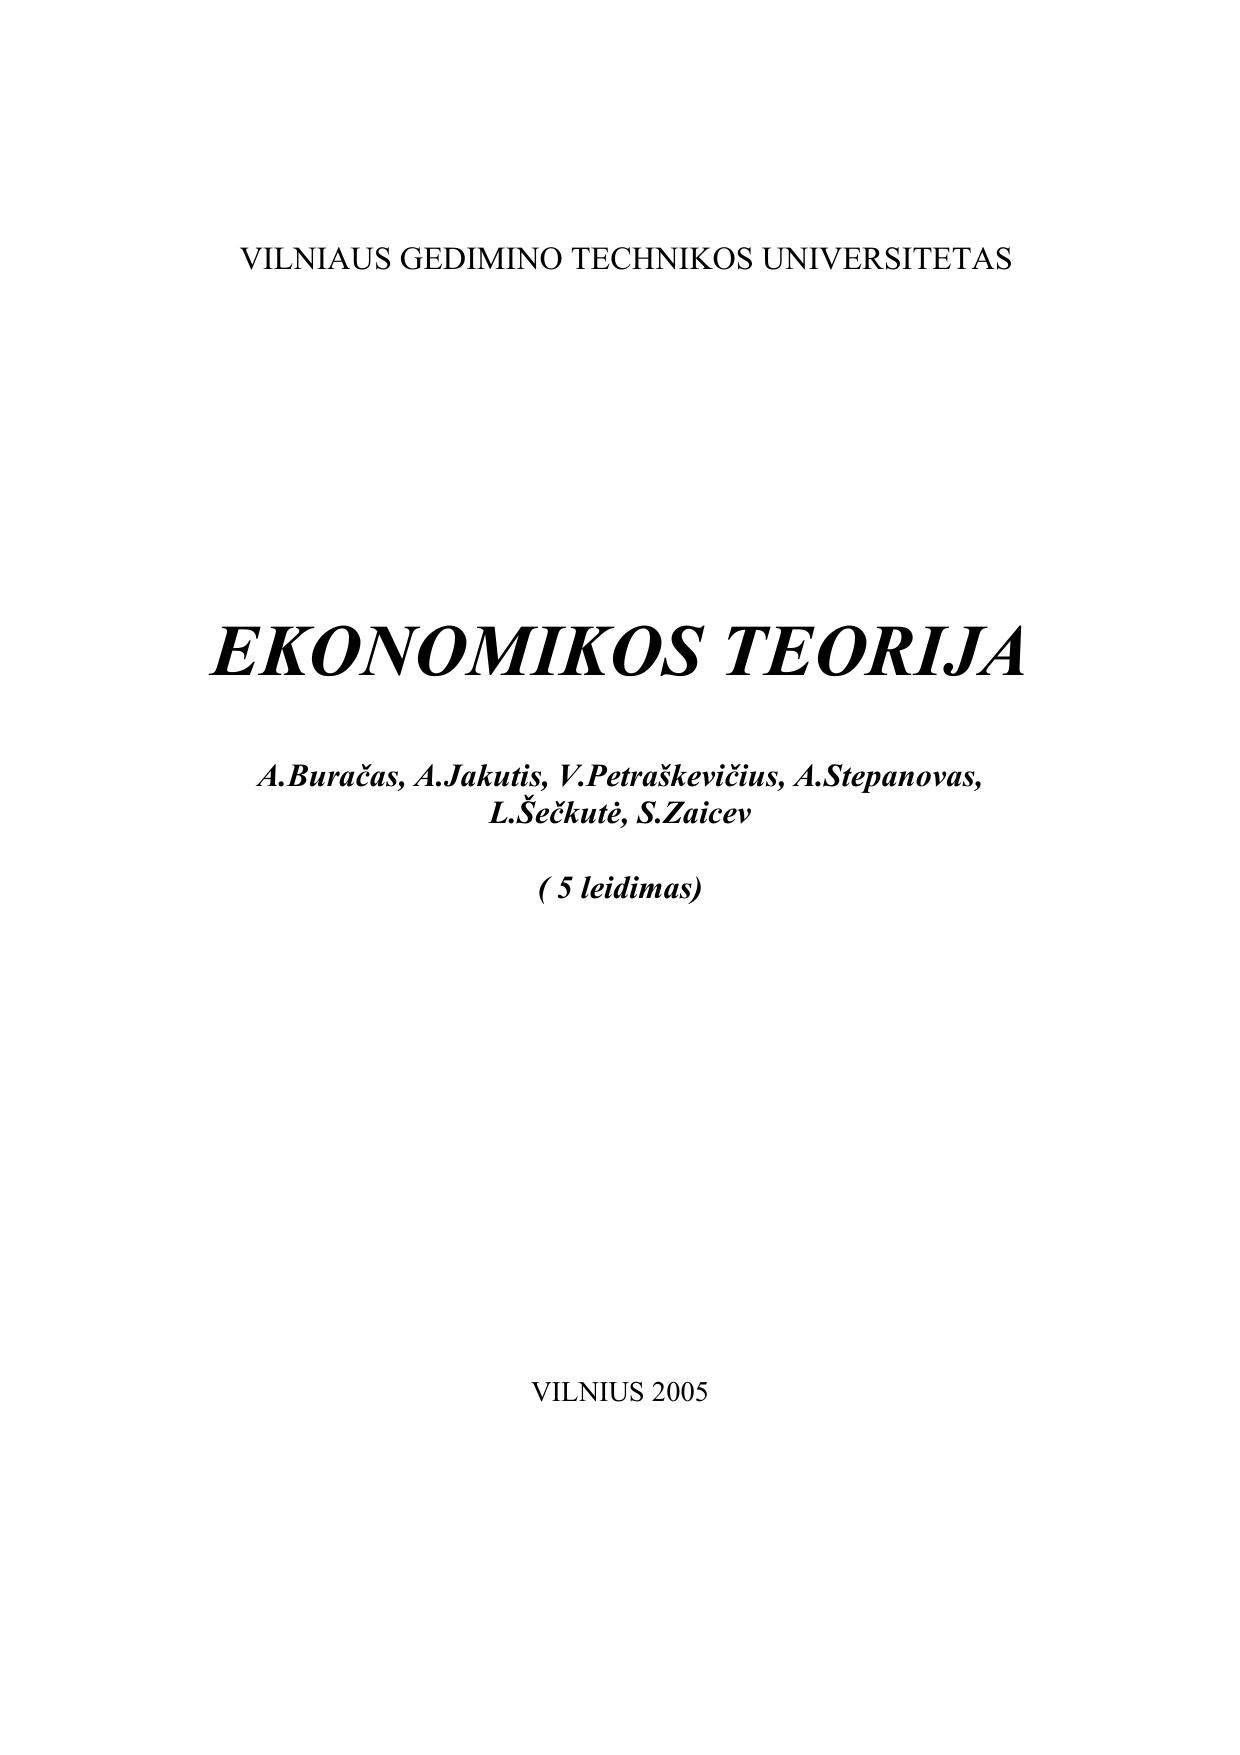 Ekonomikos Teorija (2005) [LT]